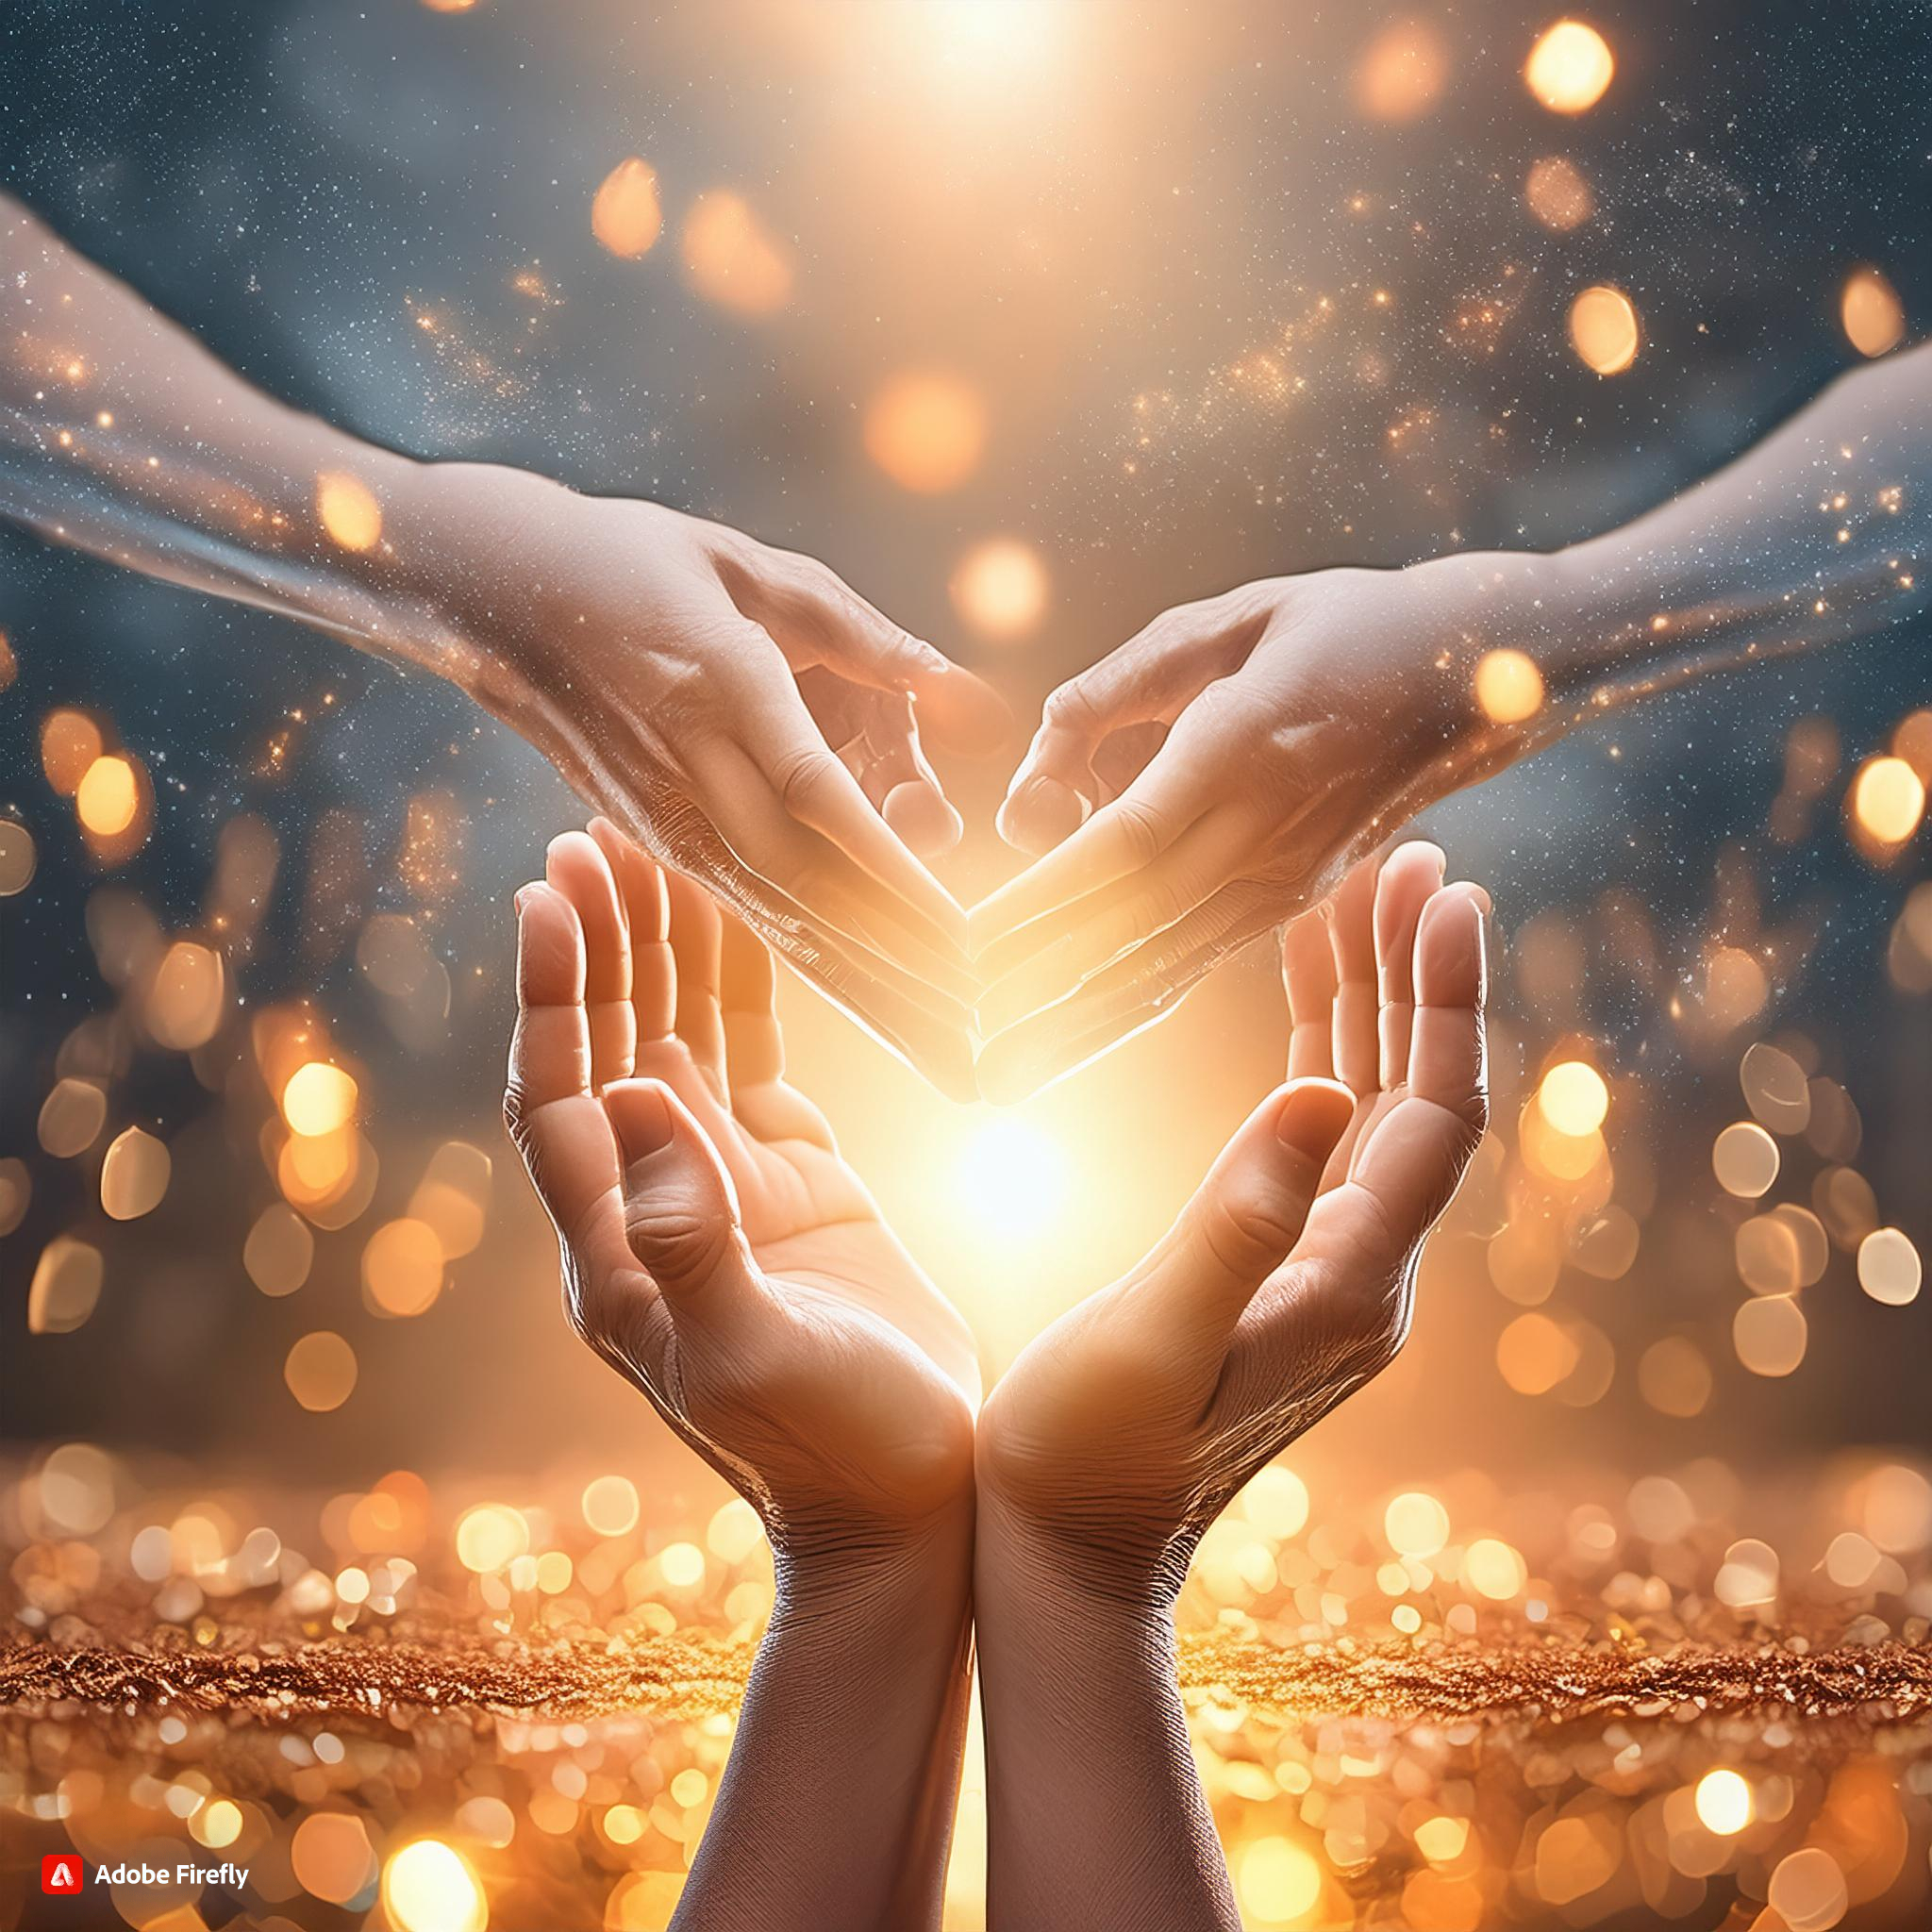 Soul Healing es werden Hände dargestellt, die einen Energieaustausch symbolisieren in Form von Licht